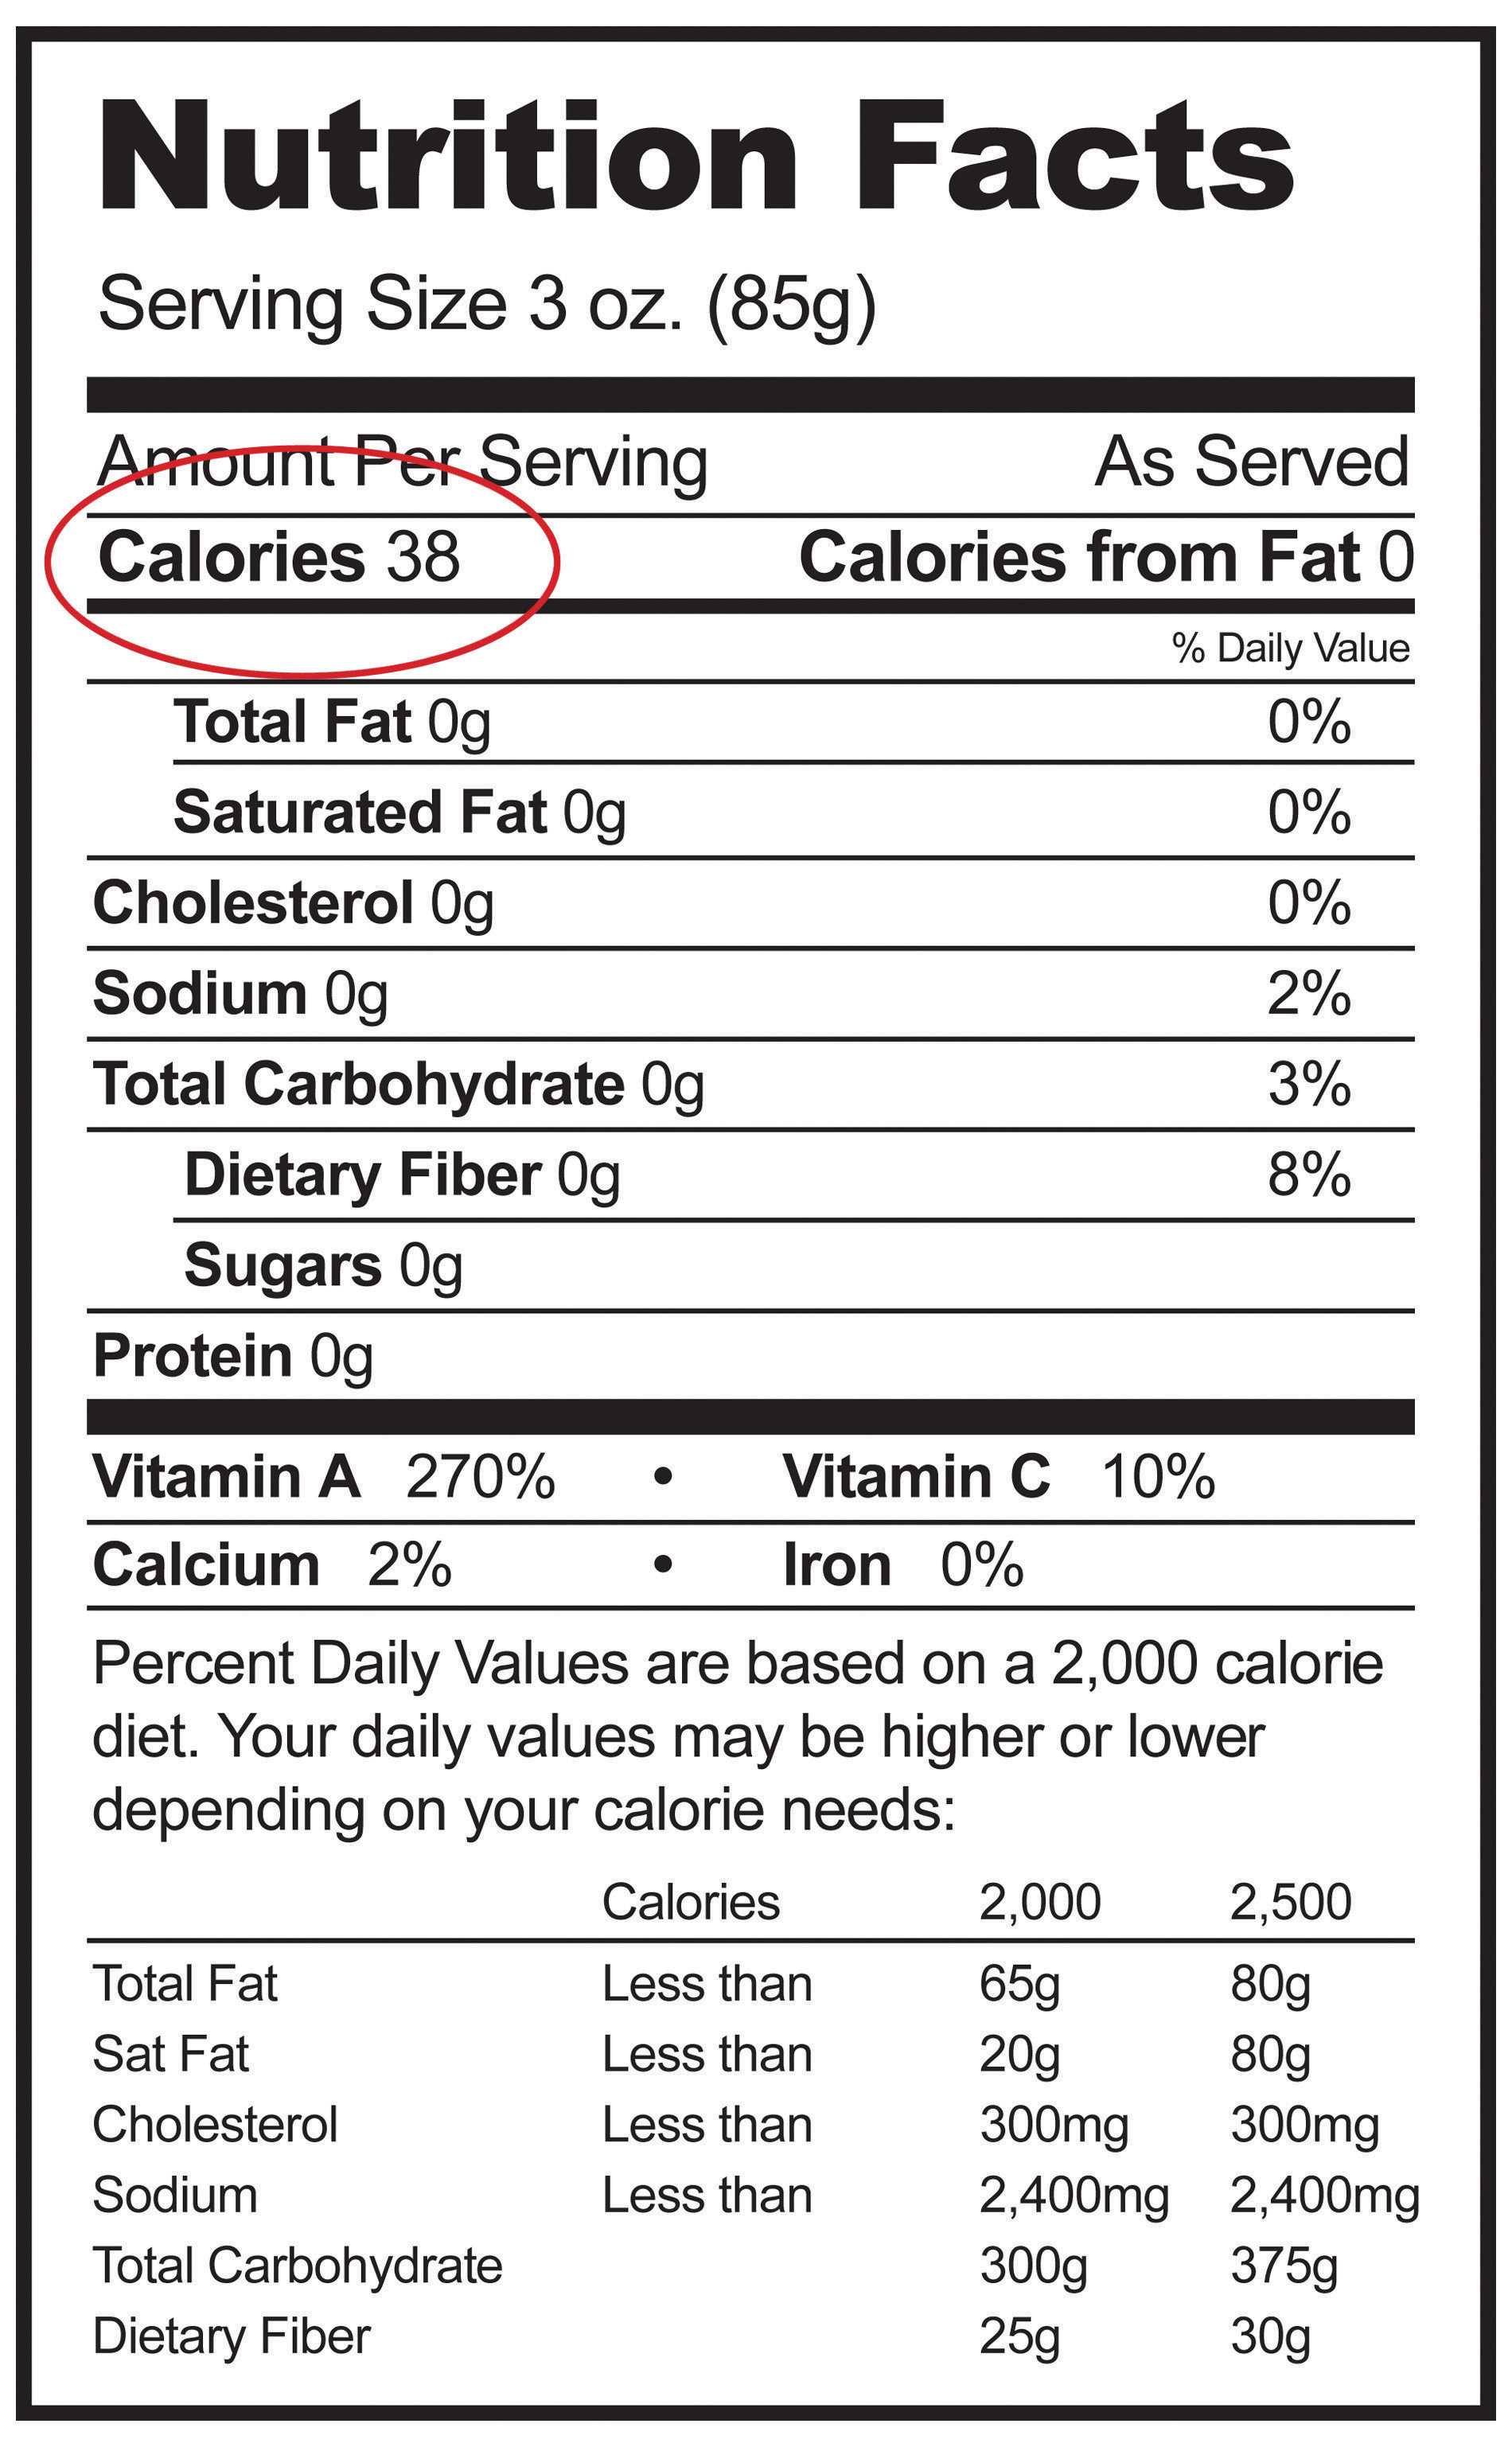 Etiqueta nutricional con un círculo rojo alrededor de la cantidad de calorías.